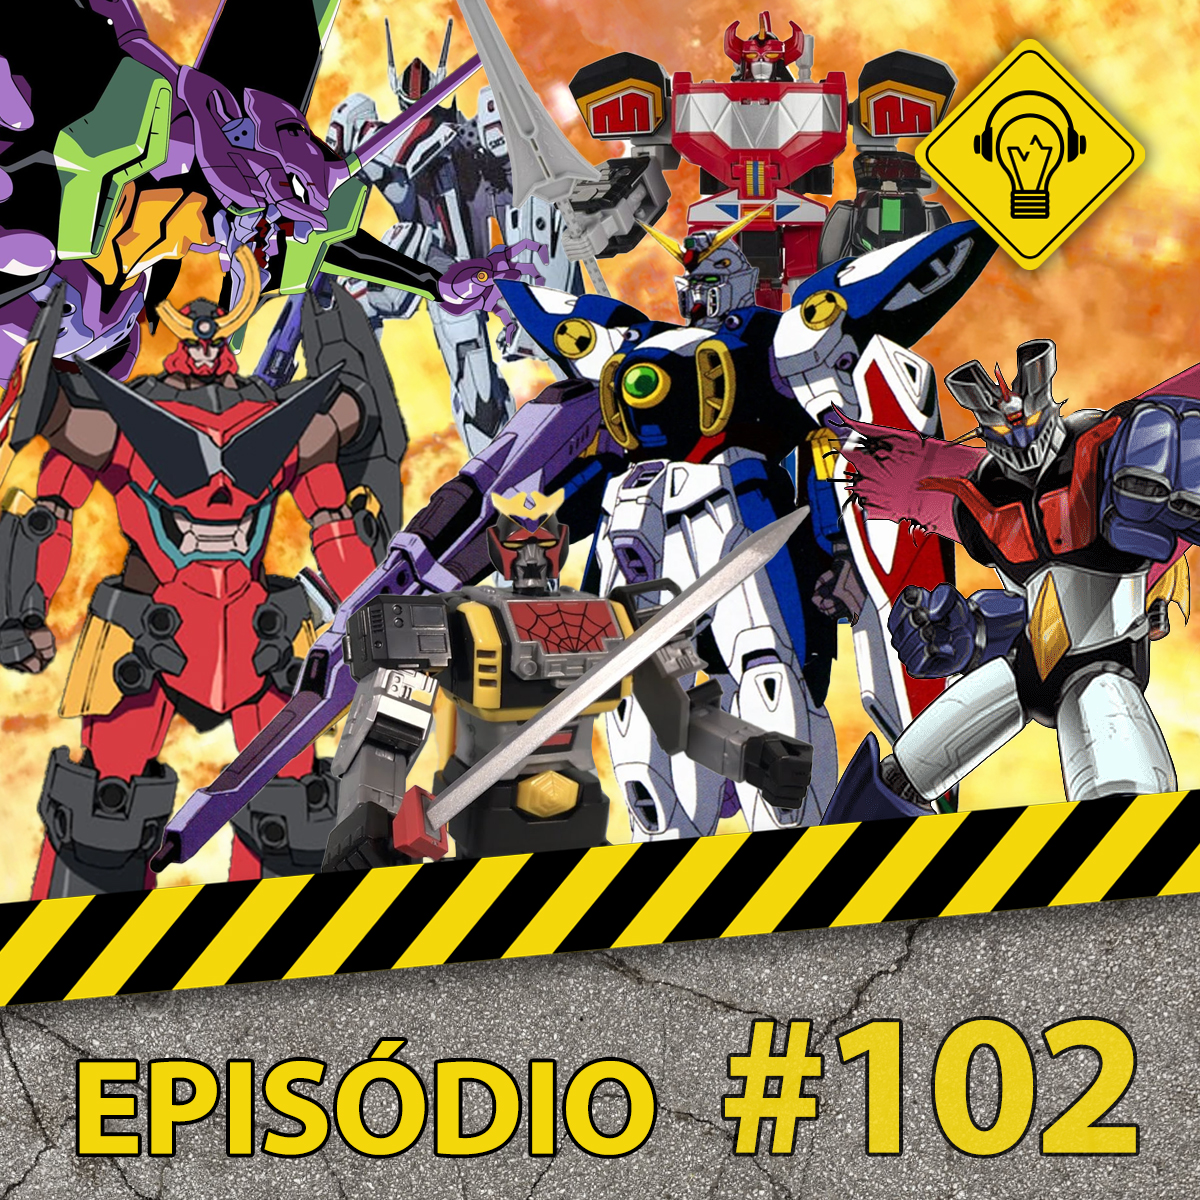 Podcast Ideia Errada 102 #Robôs Gigantes